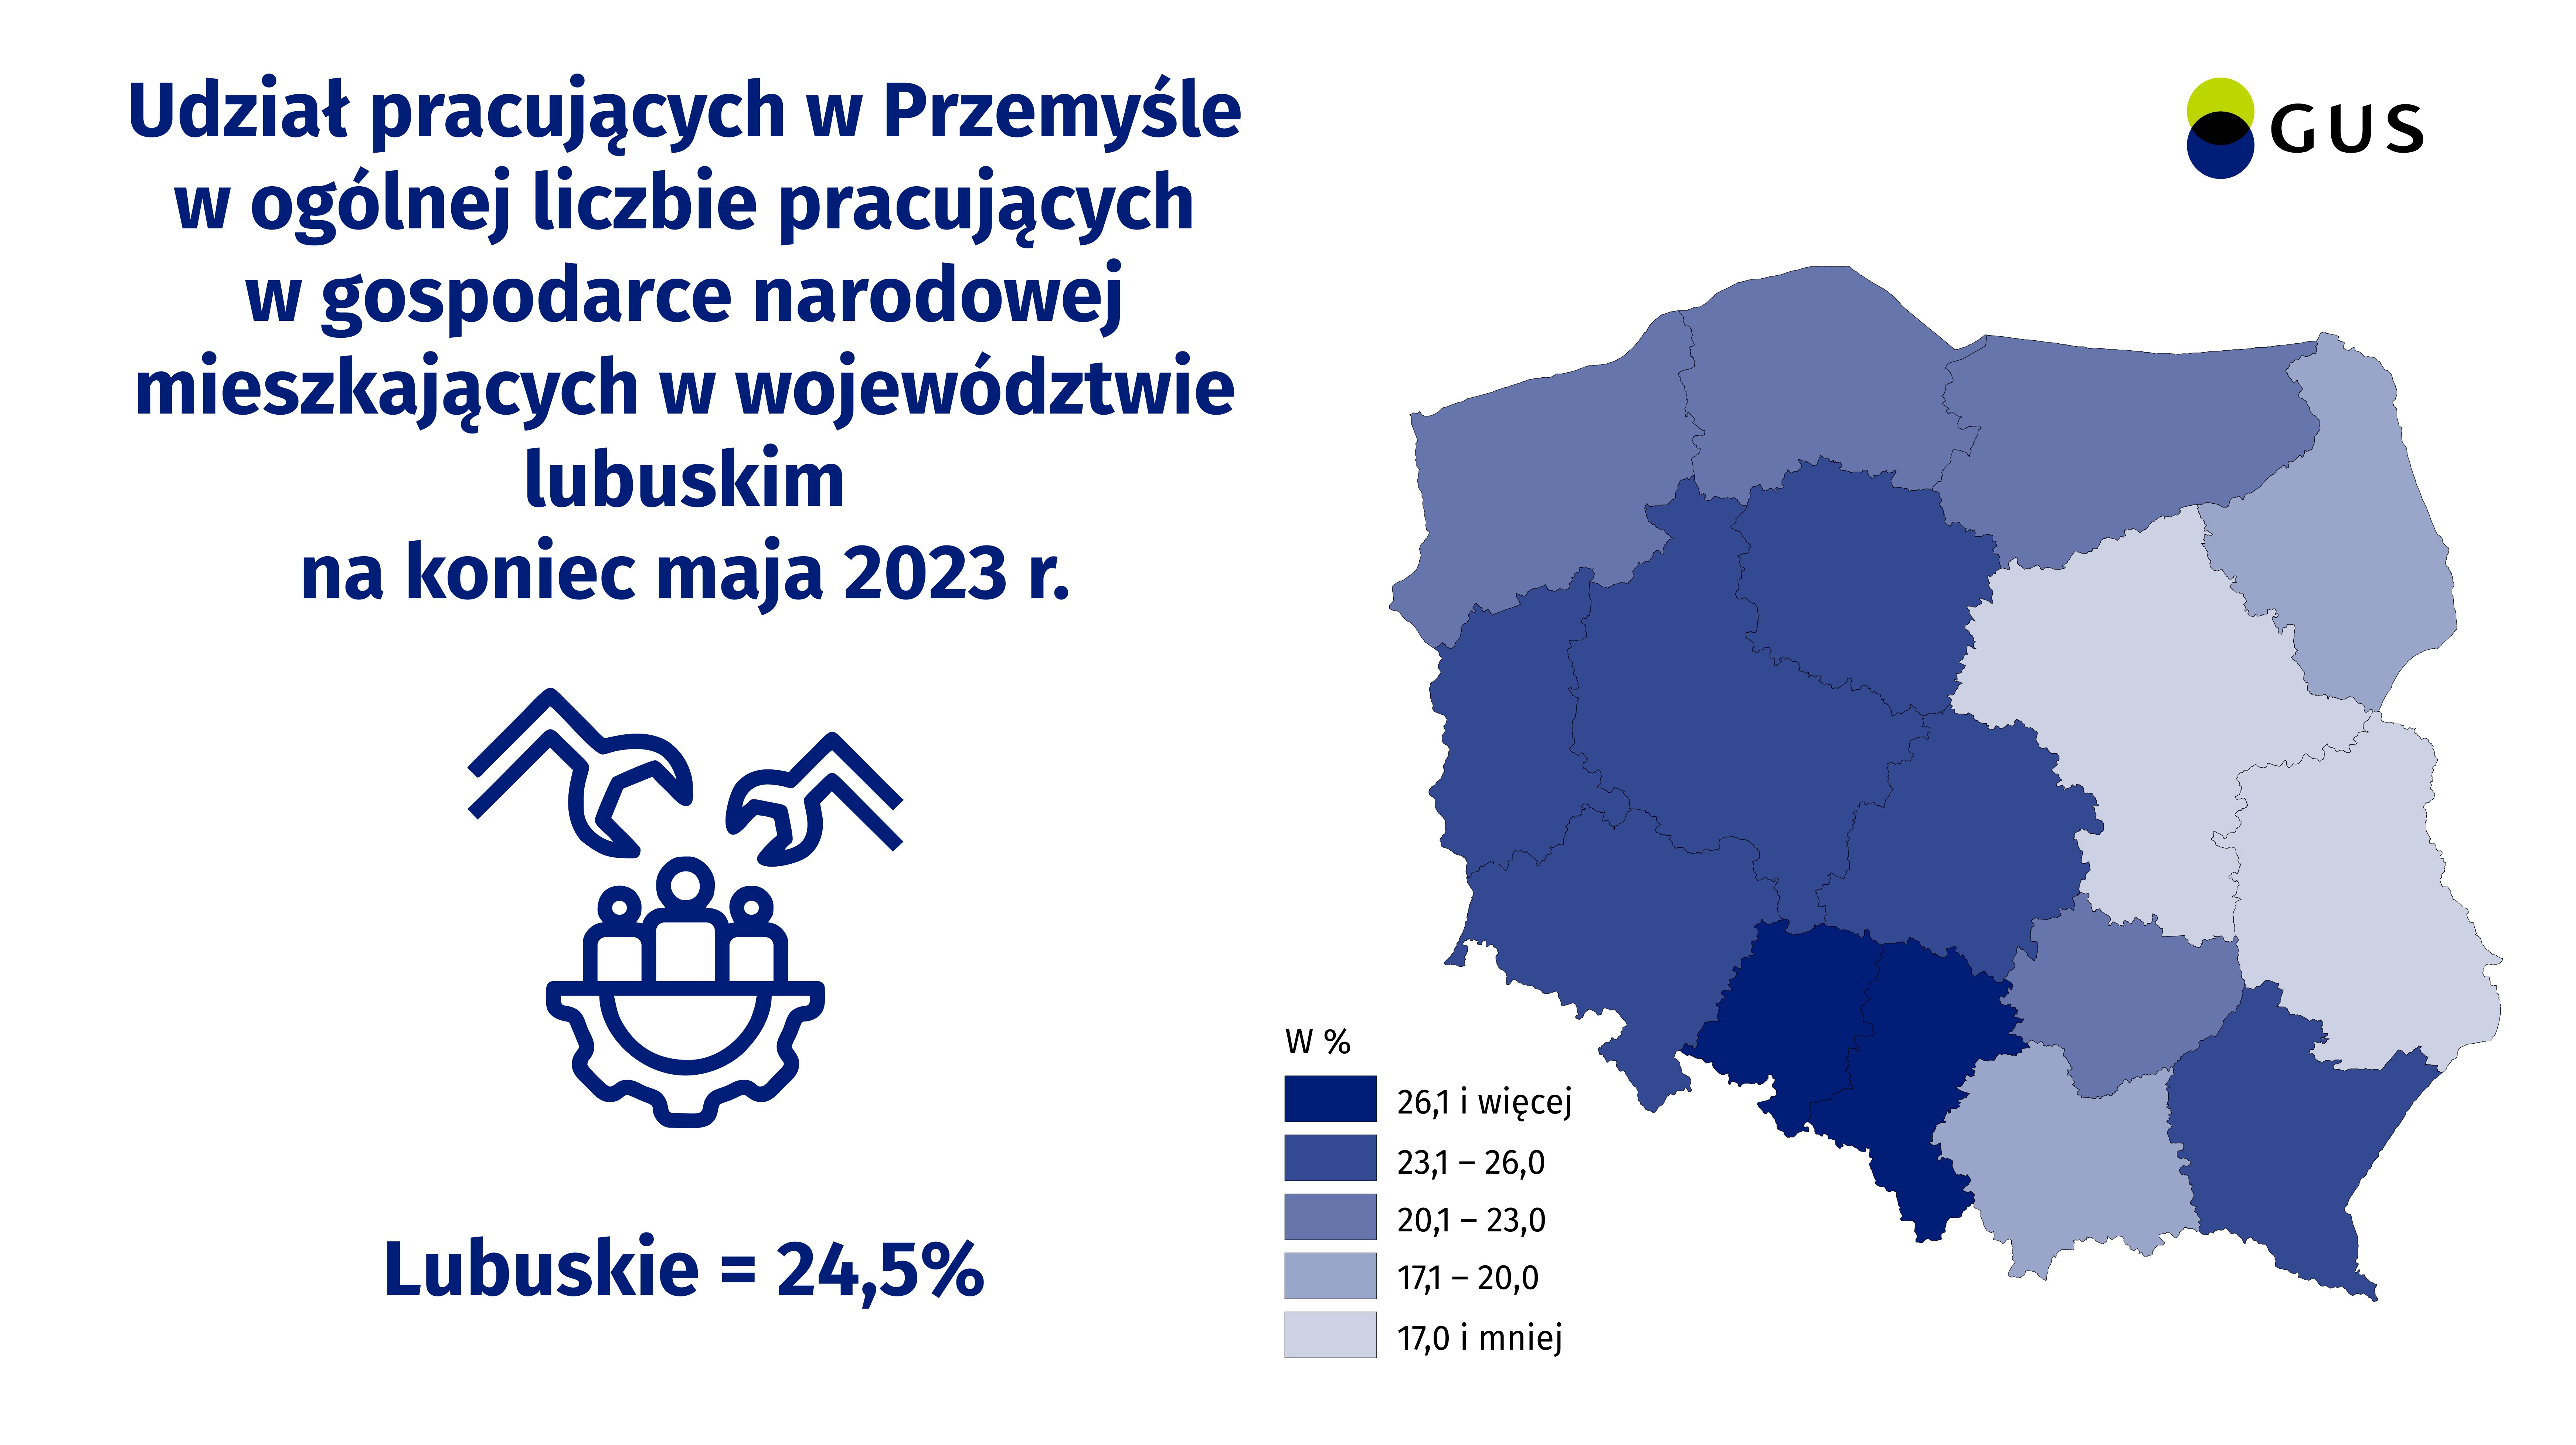 Mapa polski w pdziale na wojeówdztwa, wartośc dla województwa lubuskiego wynosi 24,5%.